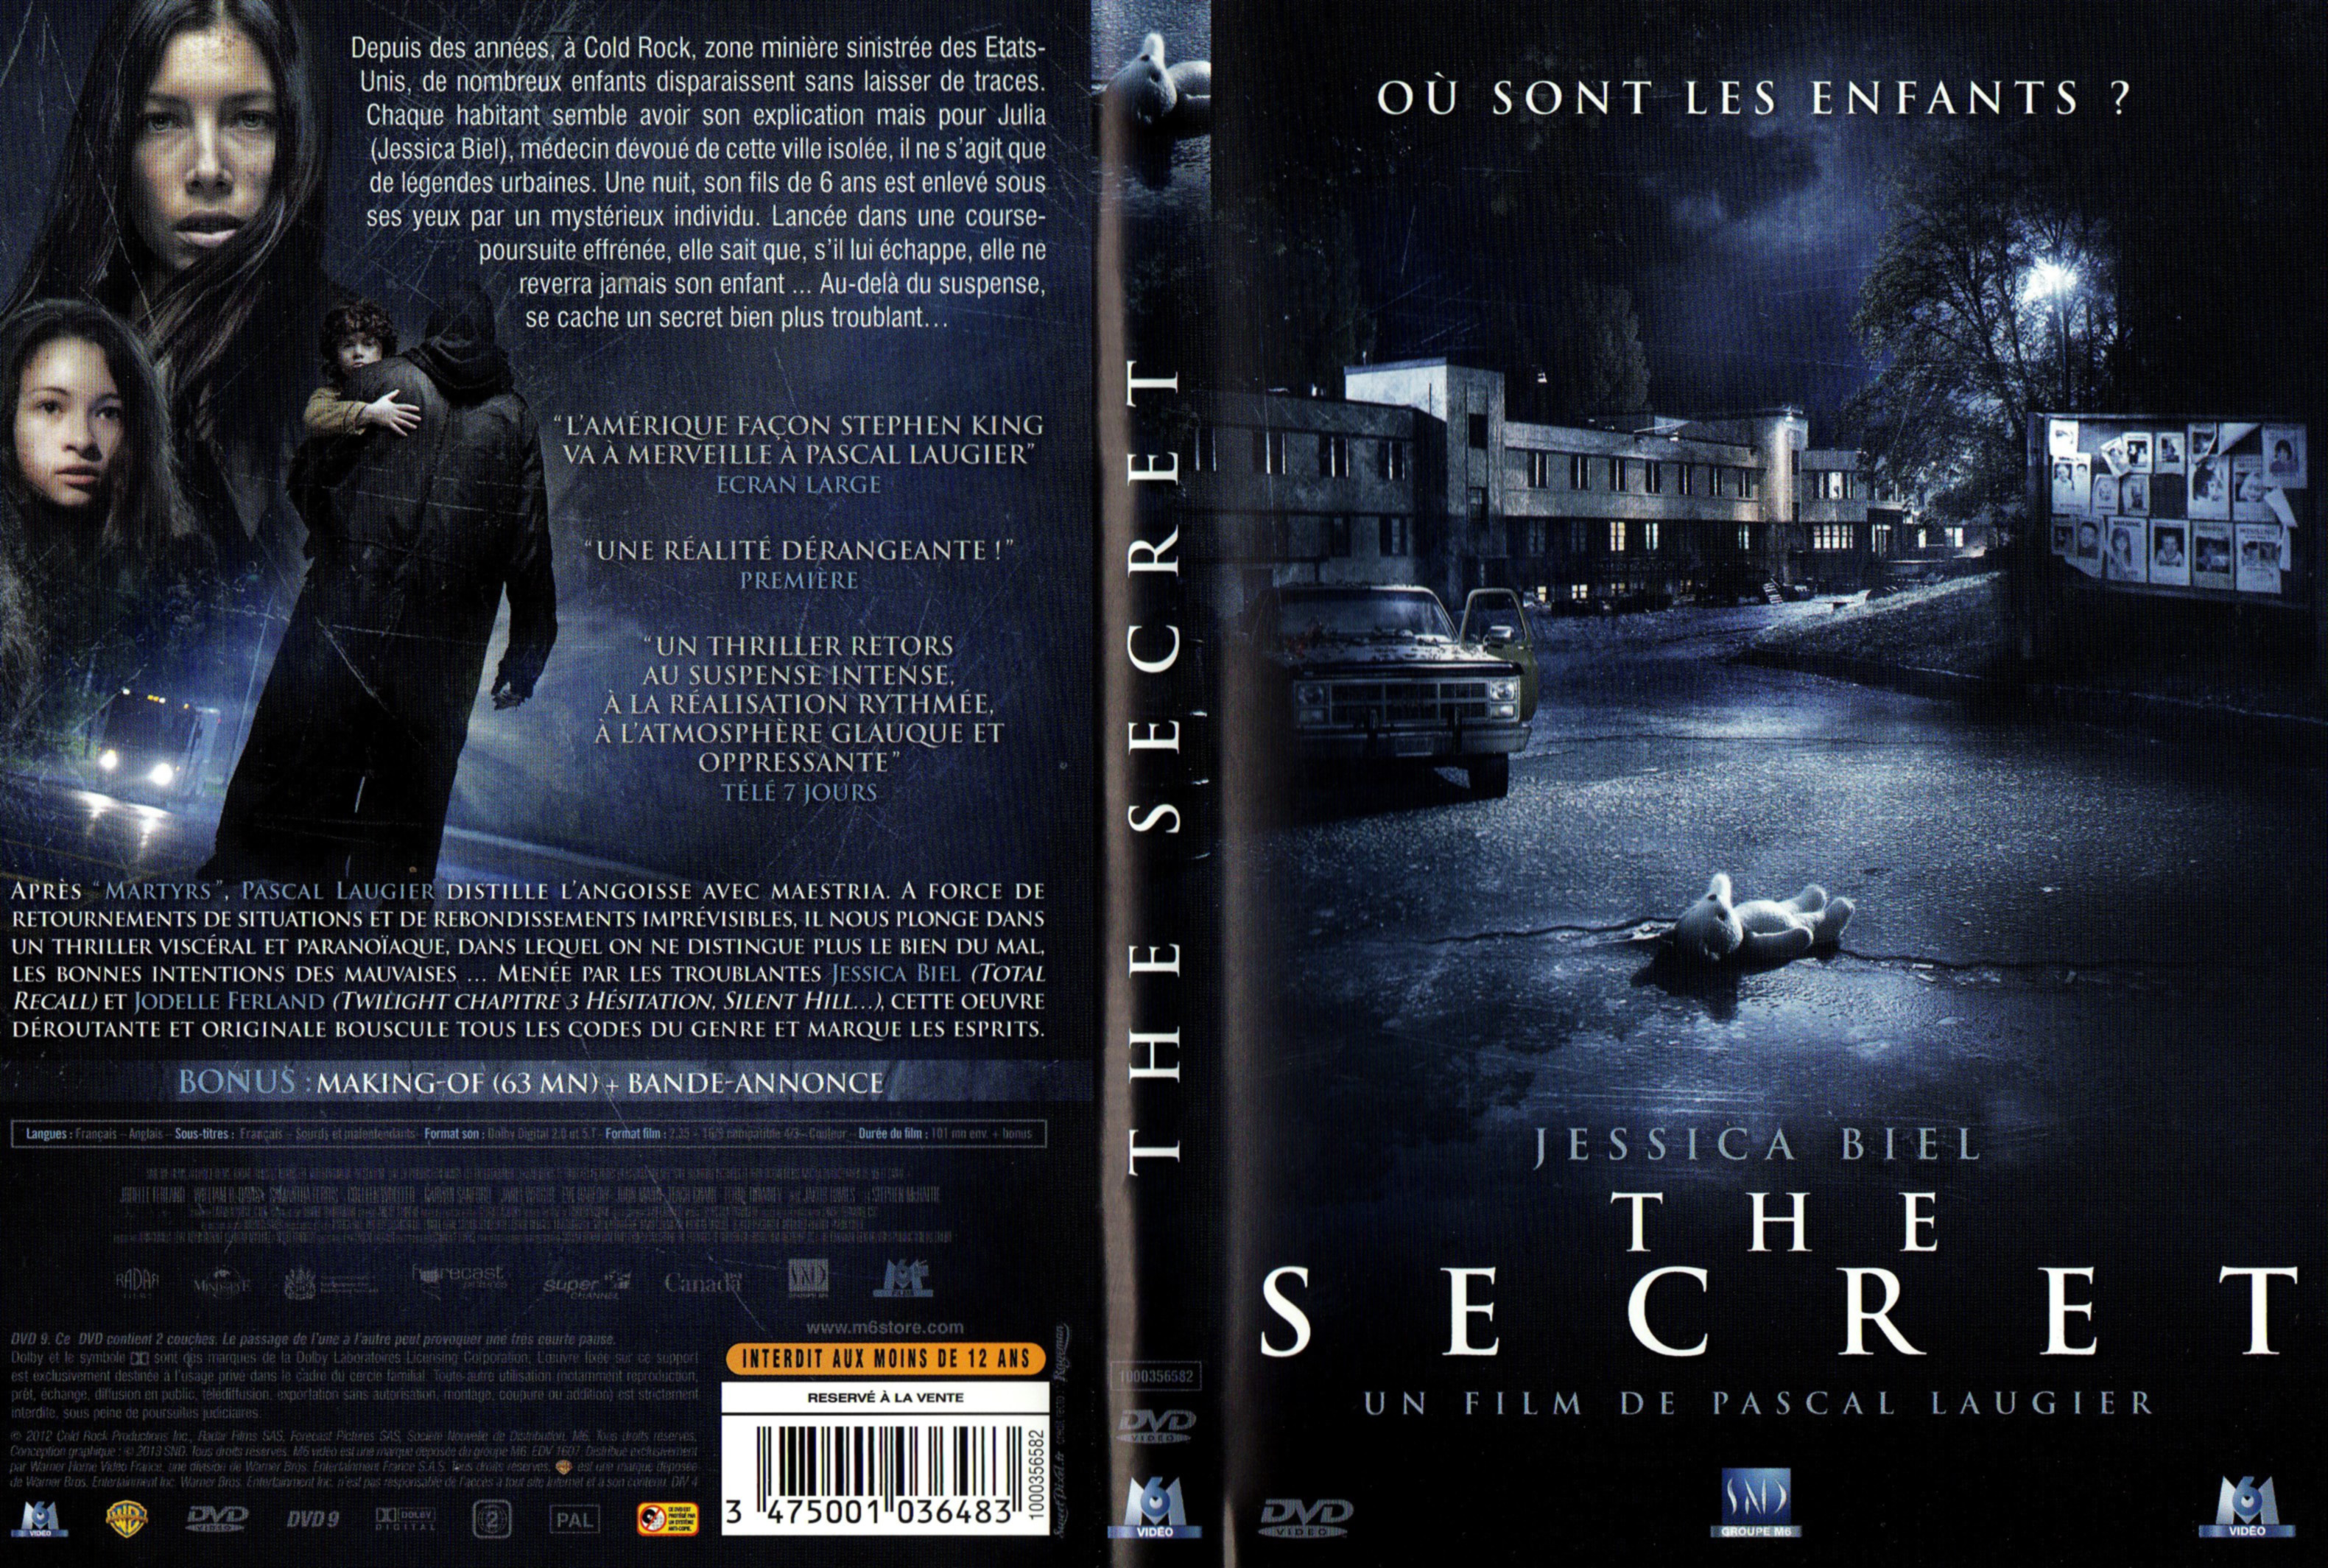 The Secret en DVD : The Secret - AlloCiné